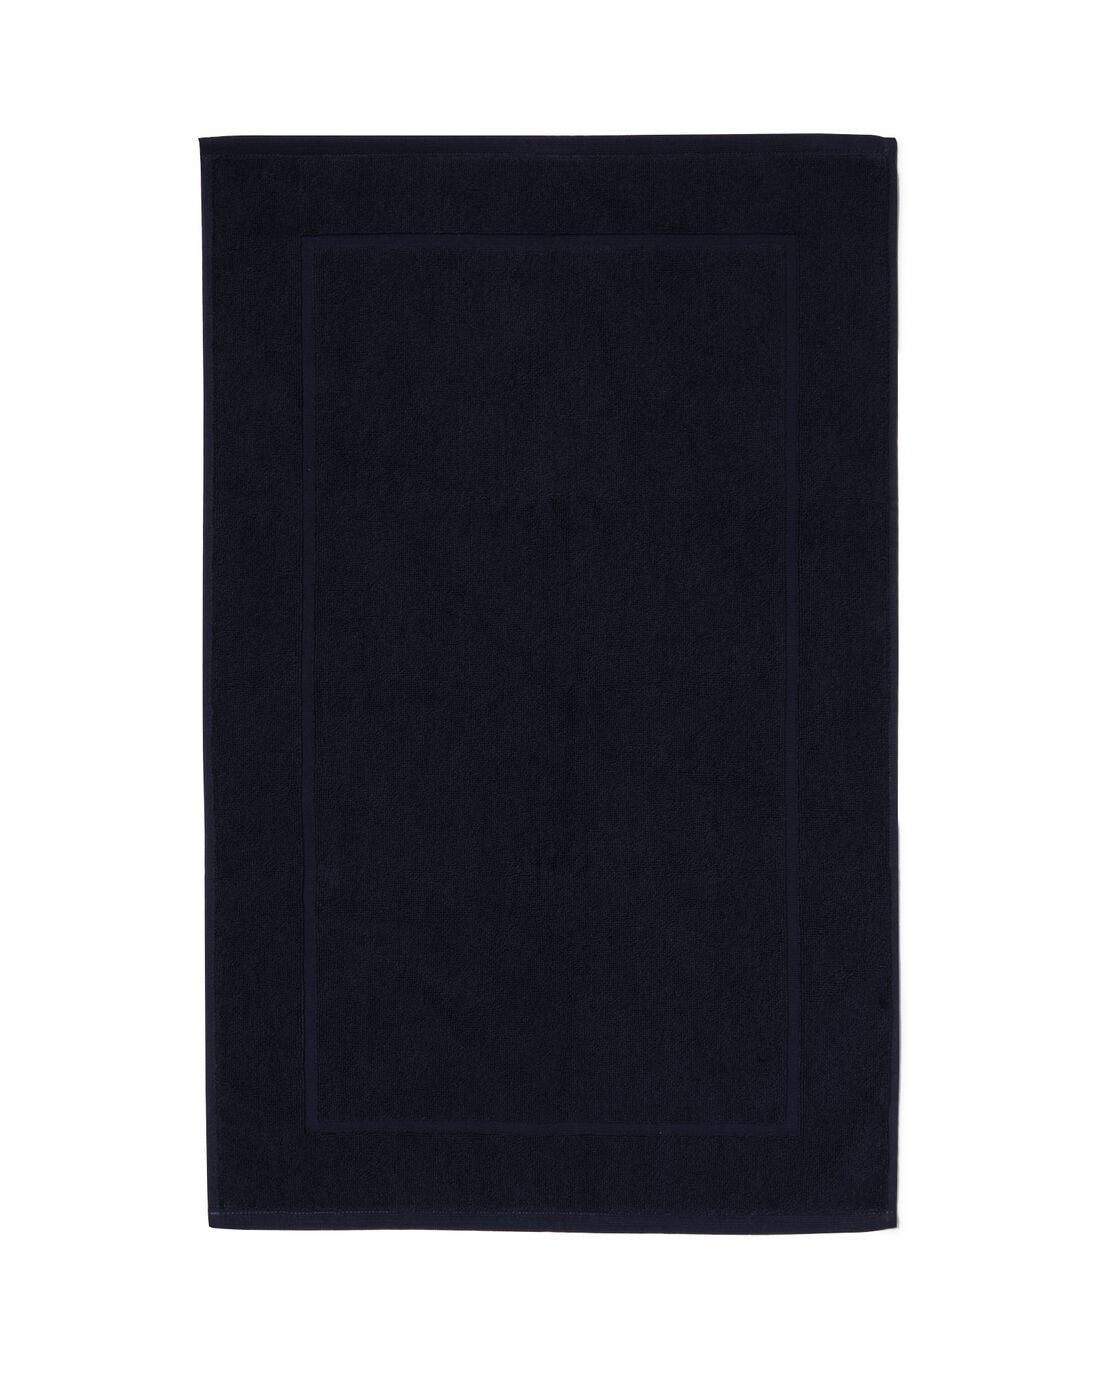 HEMA Badmat 50x80 Zware Kwaliteit Donkerblauw (donkerblauw)